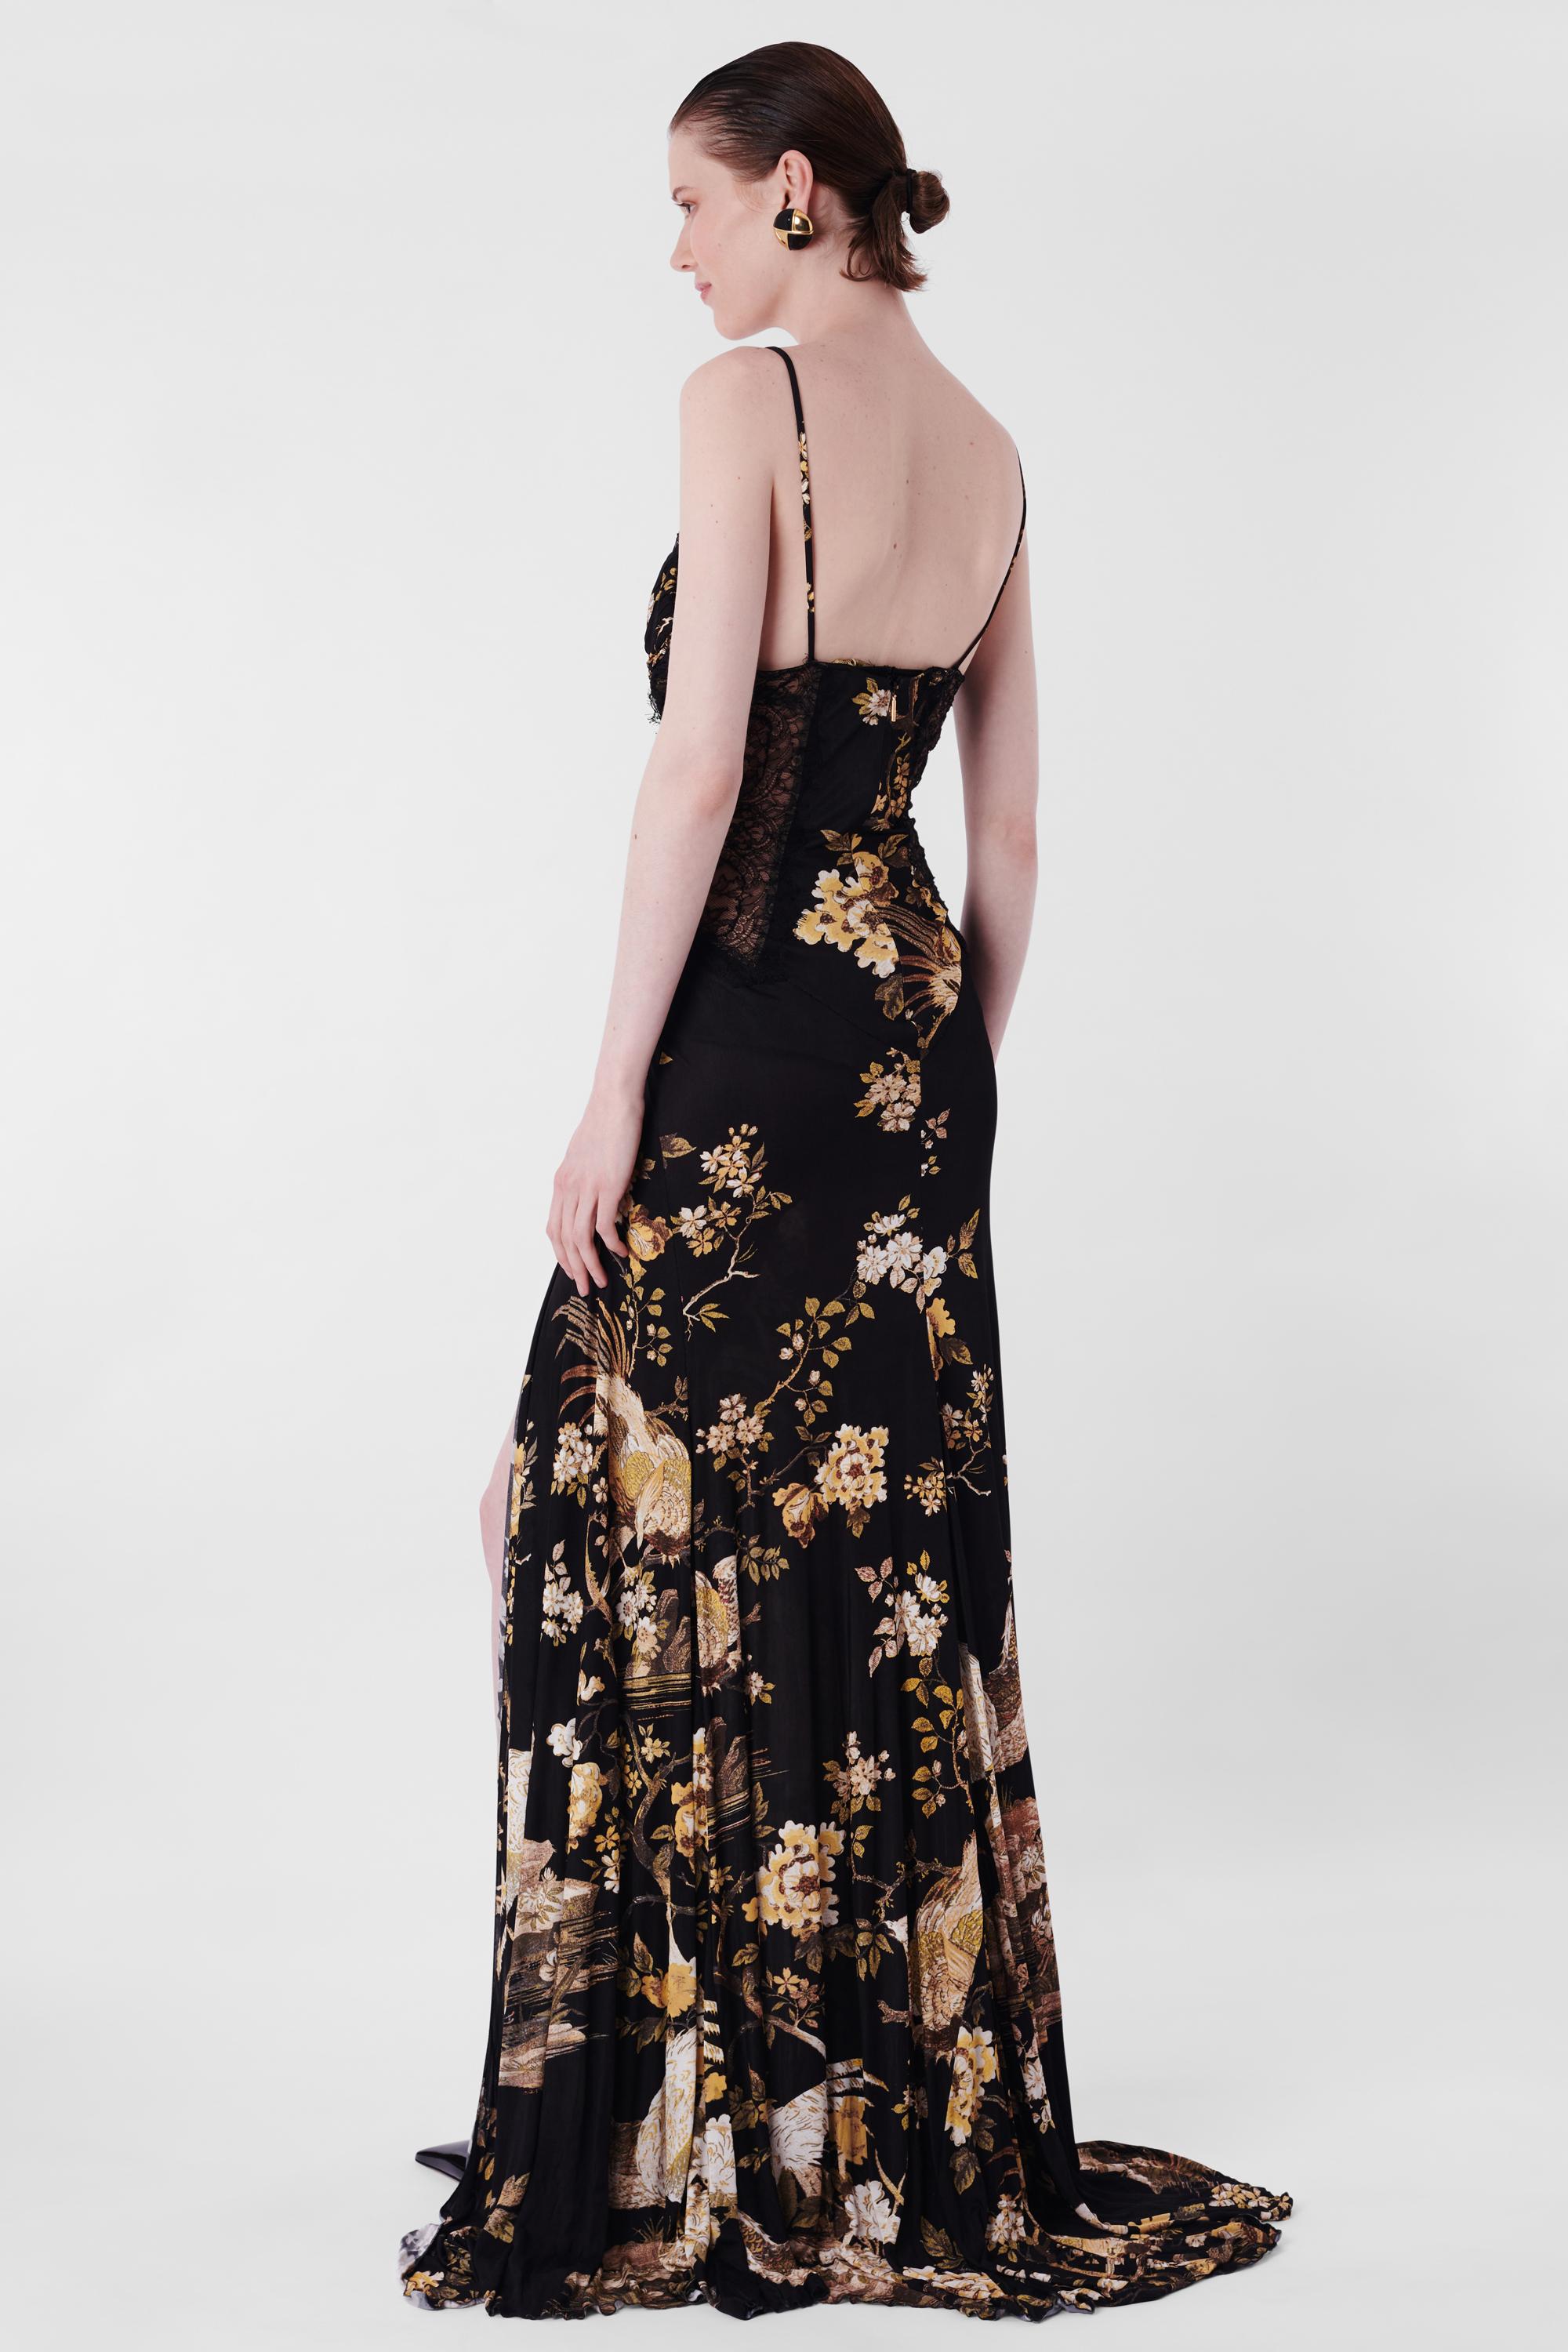 Nous sommes heureux de vous présenter cette incroyable robe vintage Roberto Cavalli F&F Vintage 2006 à fleurs et dentelle. Il présente des bonnets paddés, des détails en dentelle à la taille et à l'encolure, une fente haute sur le côté de la jambe